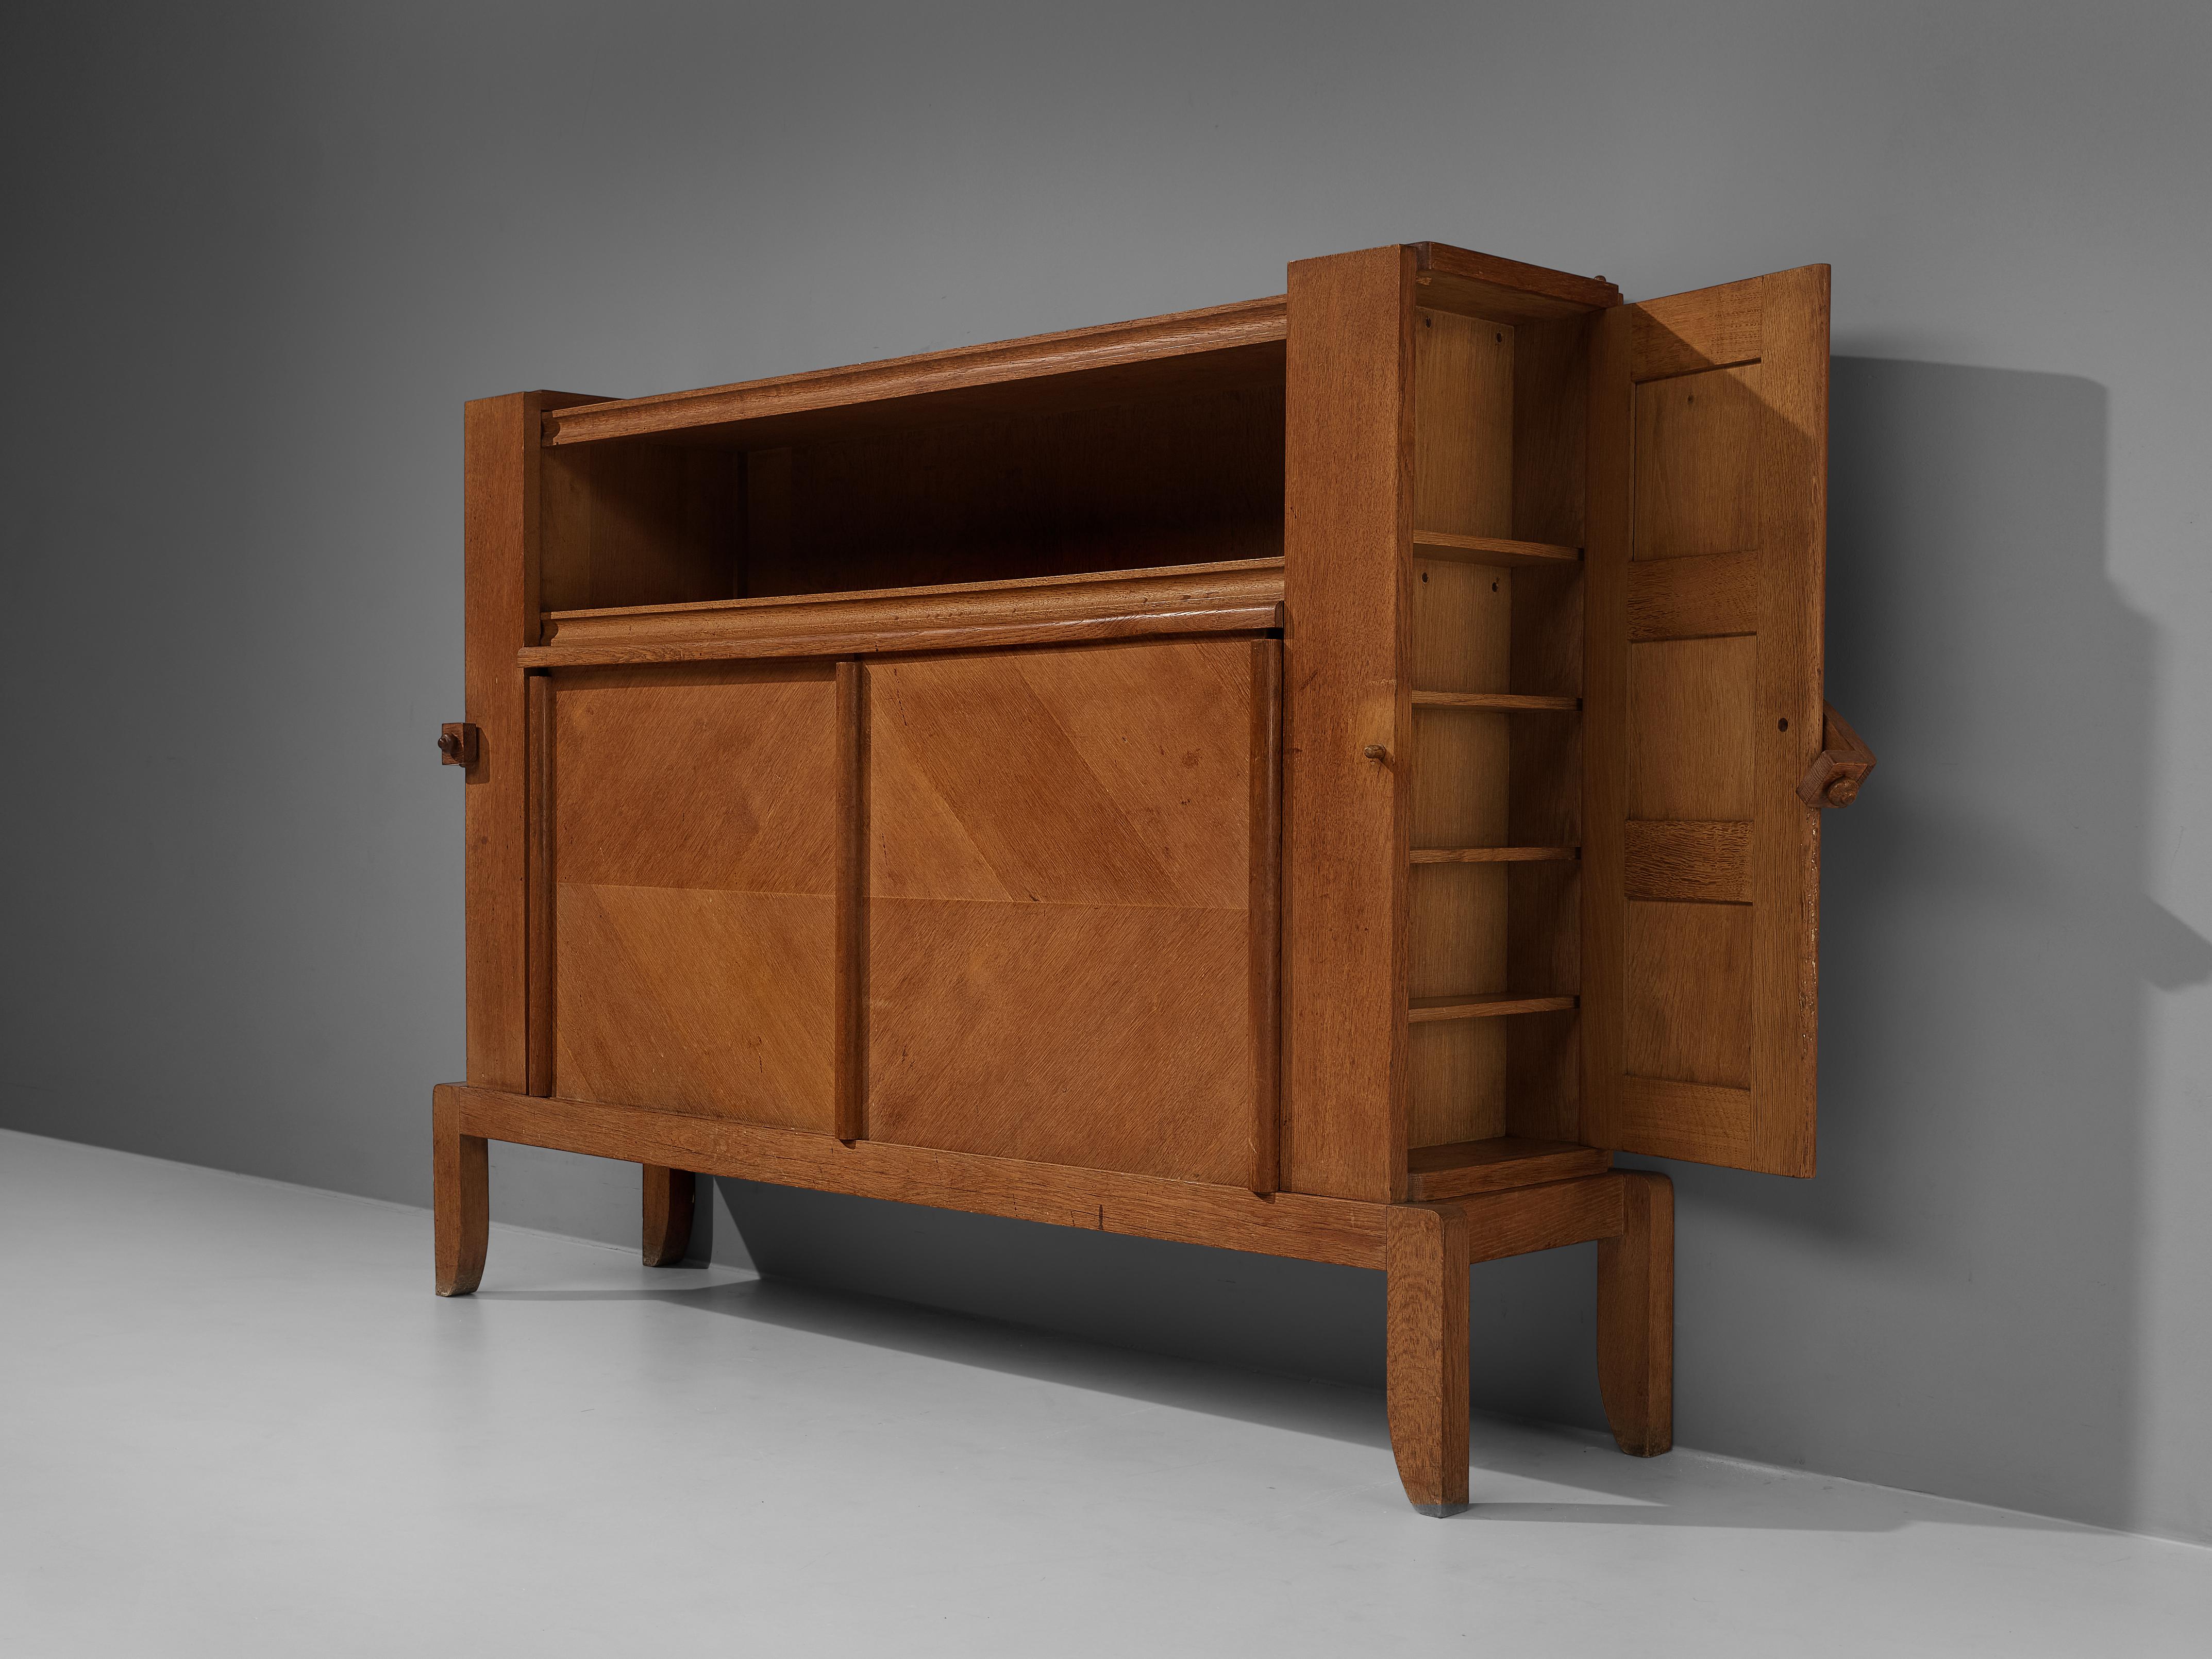 Guillerme et Chambron, armoire, chêne, France, années 1960

Guillerme et Chambron démontrent une fois de plus leur talent pour concevoir des meubles fonctionnels, bien réalisés et qui attirent l'œil. Cette armoire cubique combine des étagères